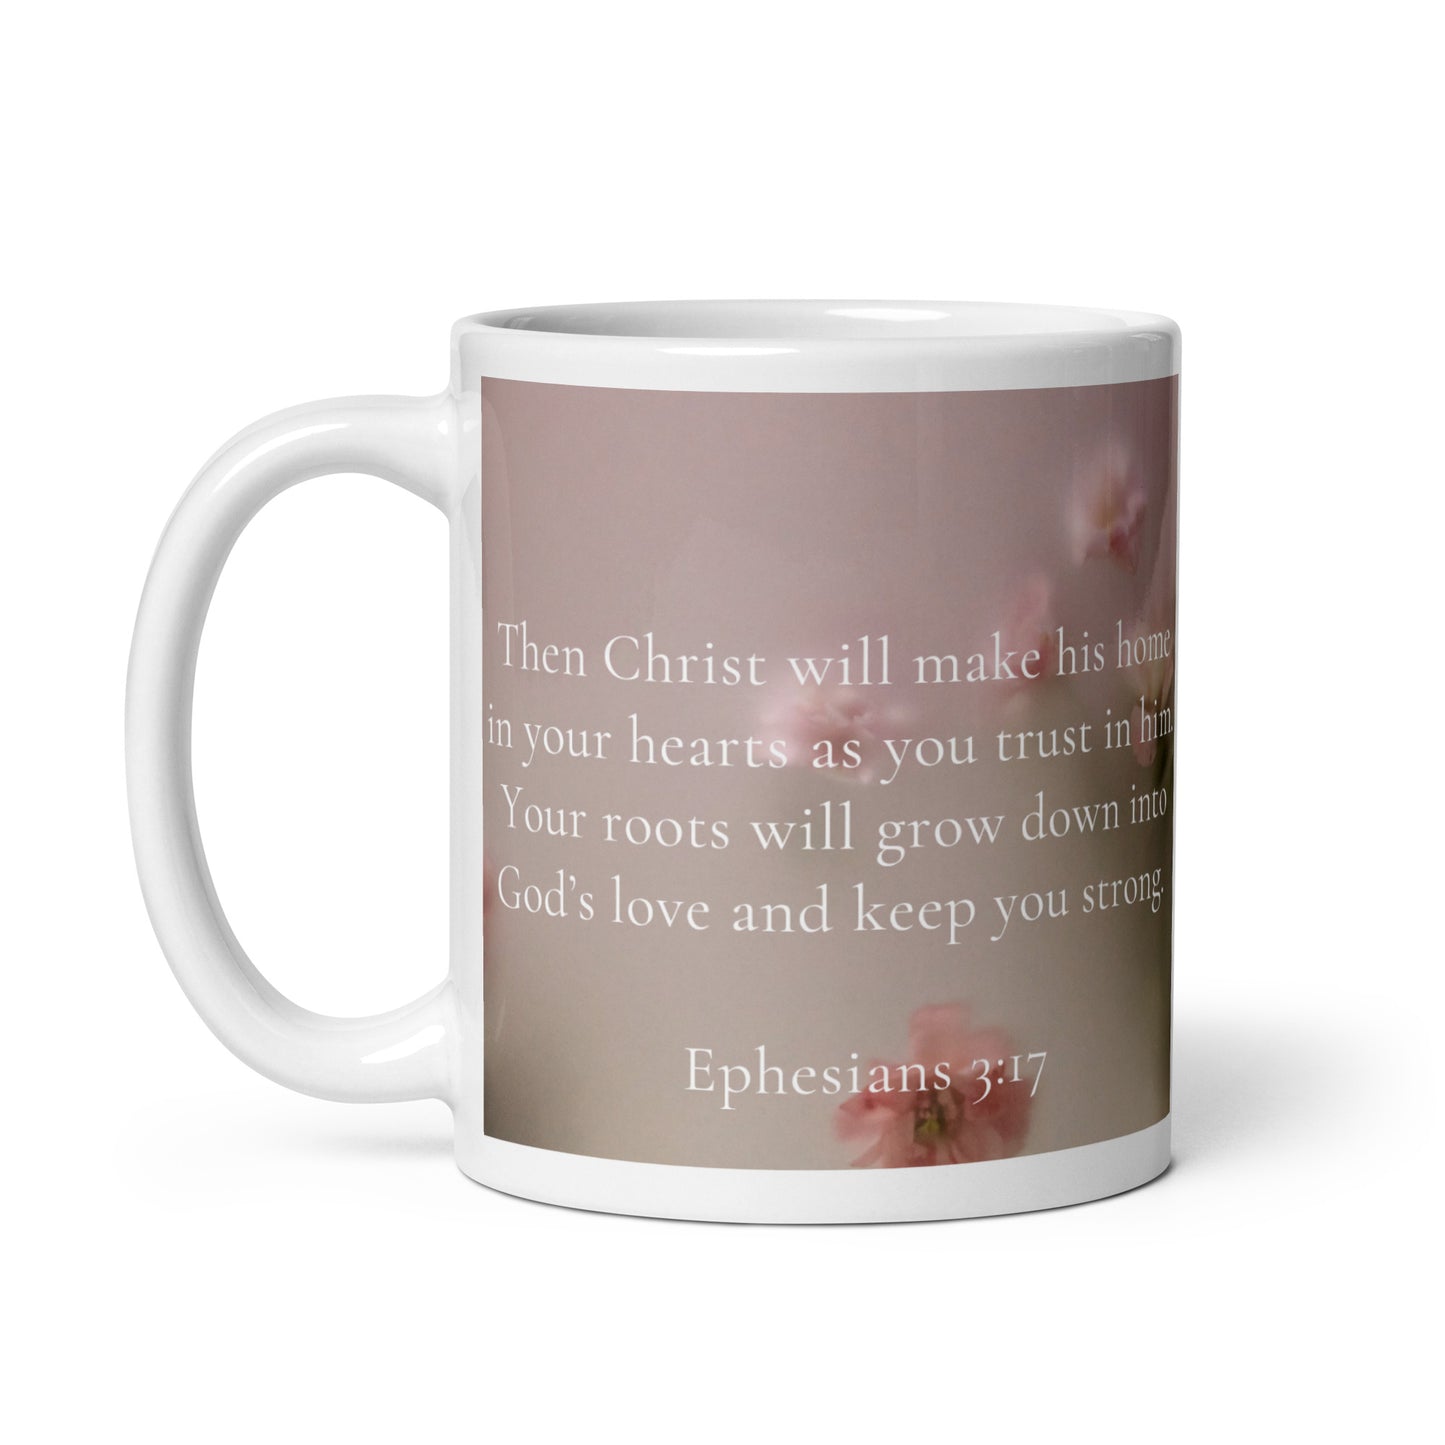 Ephesians 3:17 White glossy mug